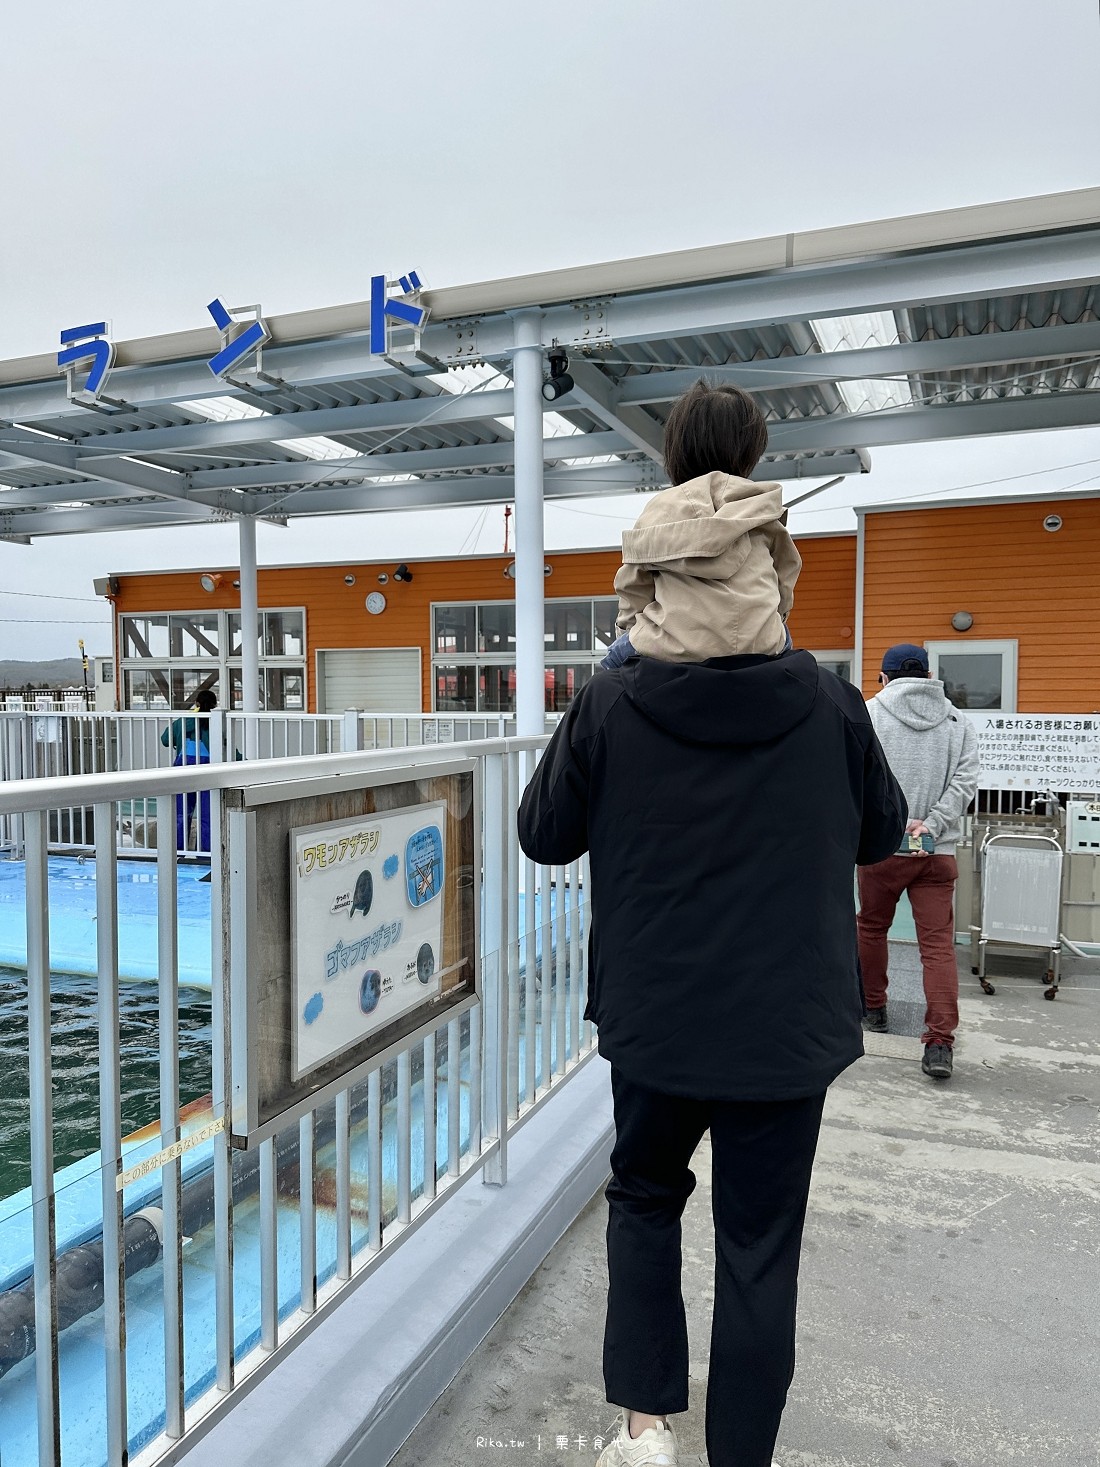 北海道 紋別 景點 海豹館 推薦 破冰船 鄂霍次克海豹中心